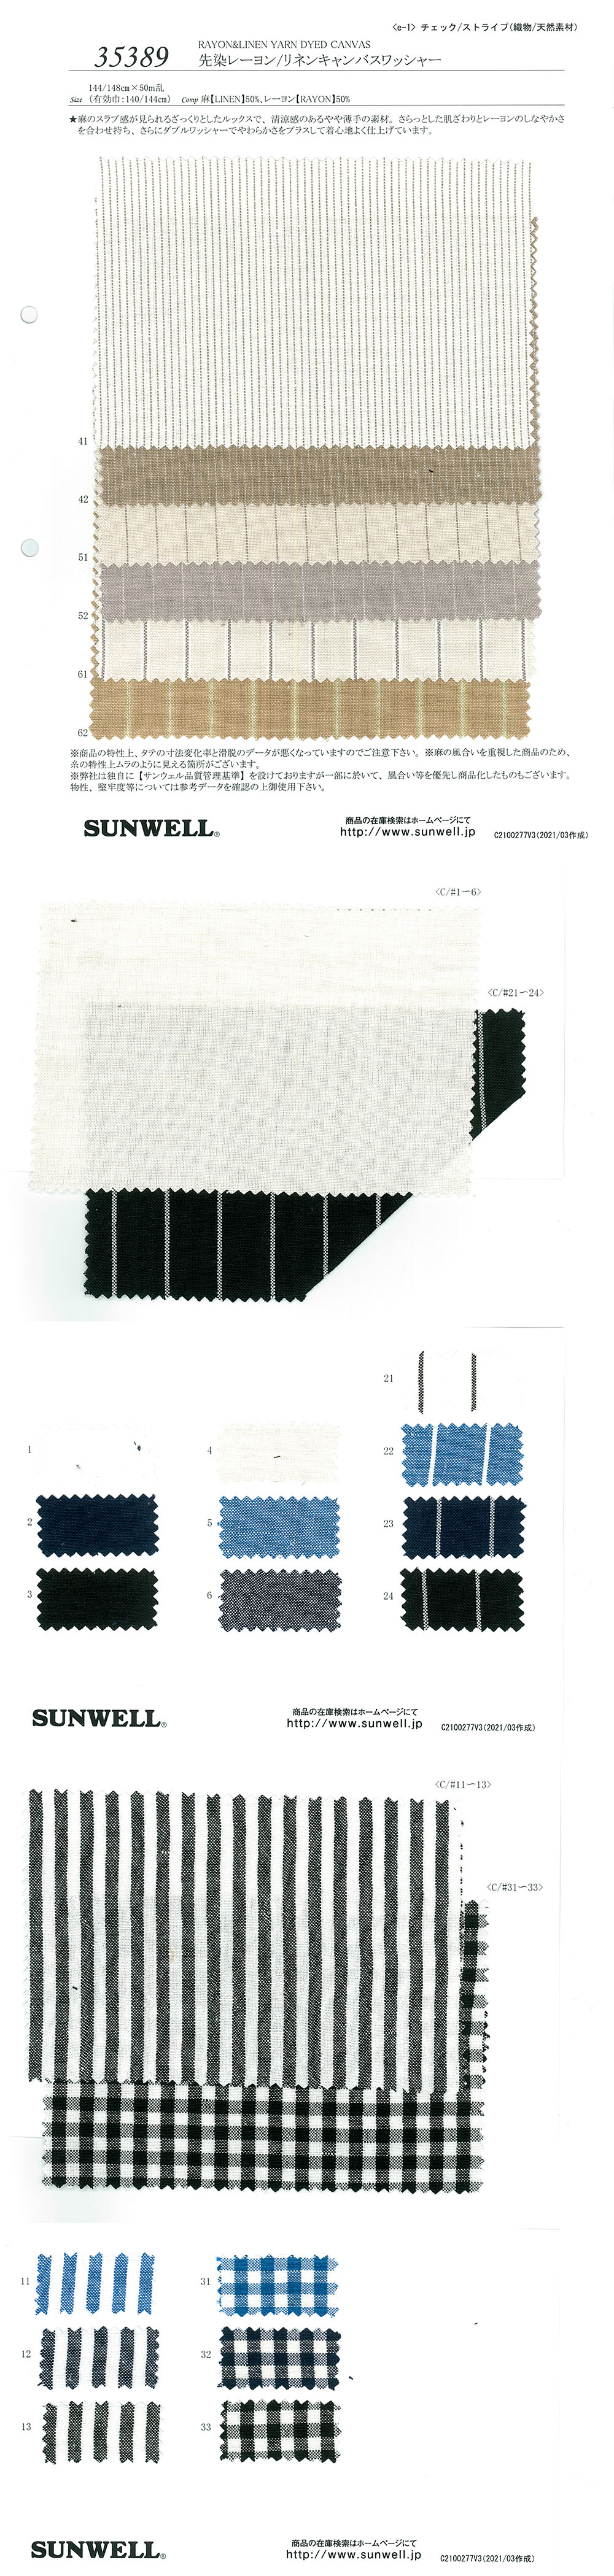 35389 Xử Lý Máy Giặt Vải Bố Canvas Rayon / Vải Lanh Nhuộm Sợi SUNWELL ( Giếng Trời )